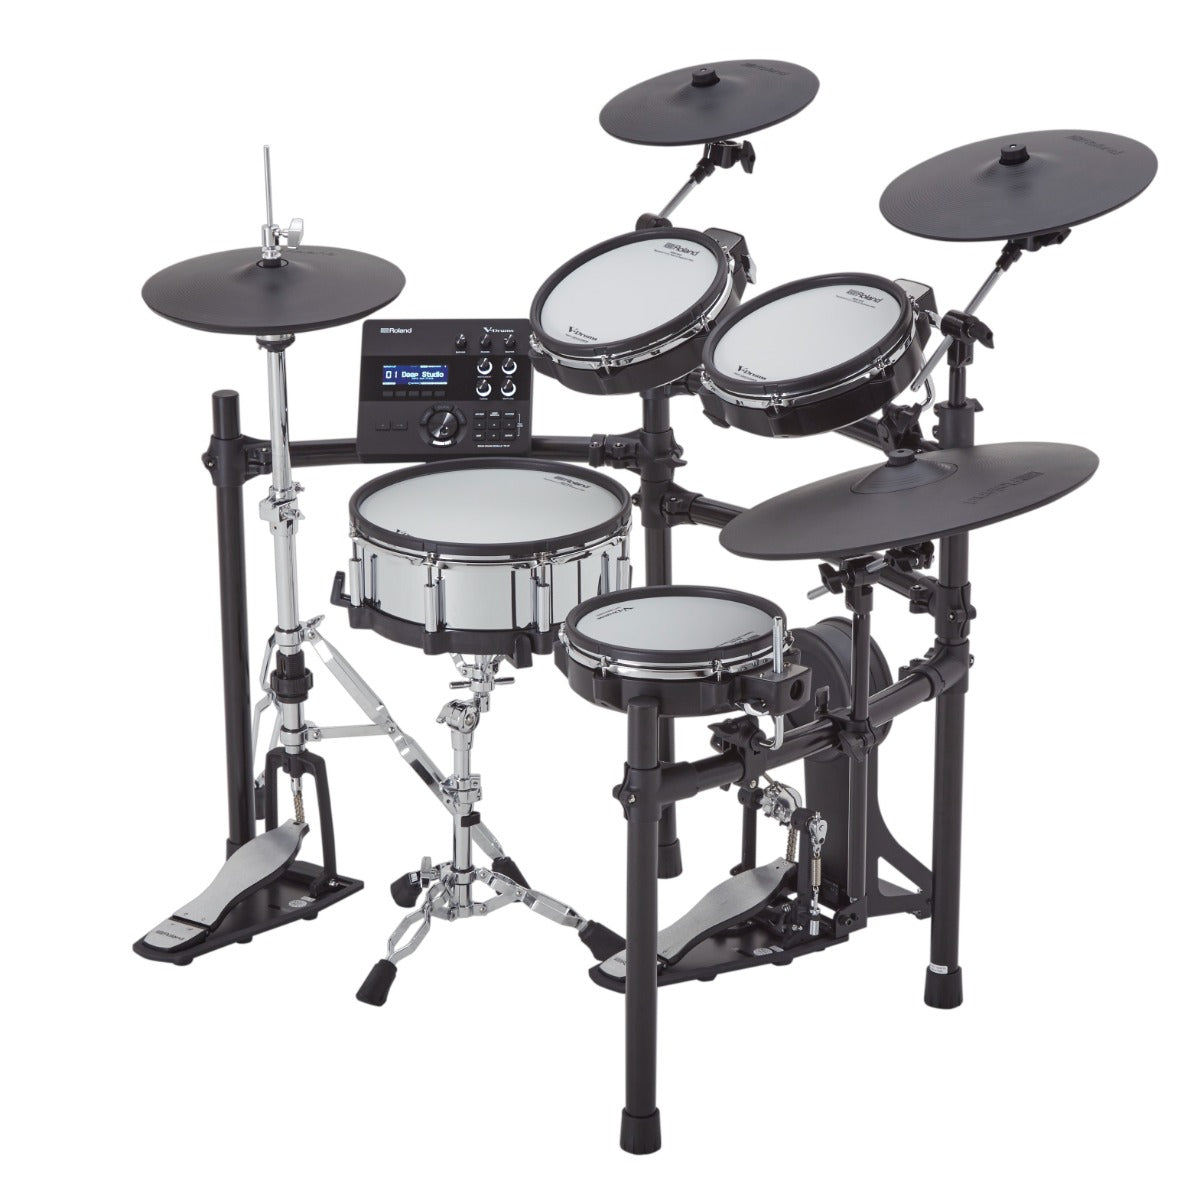 Roland TD-27KV2 V-Drums Electronic Drum Set, View 3